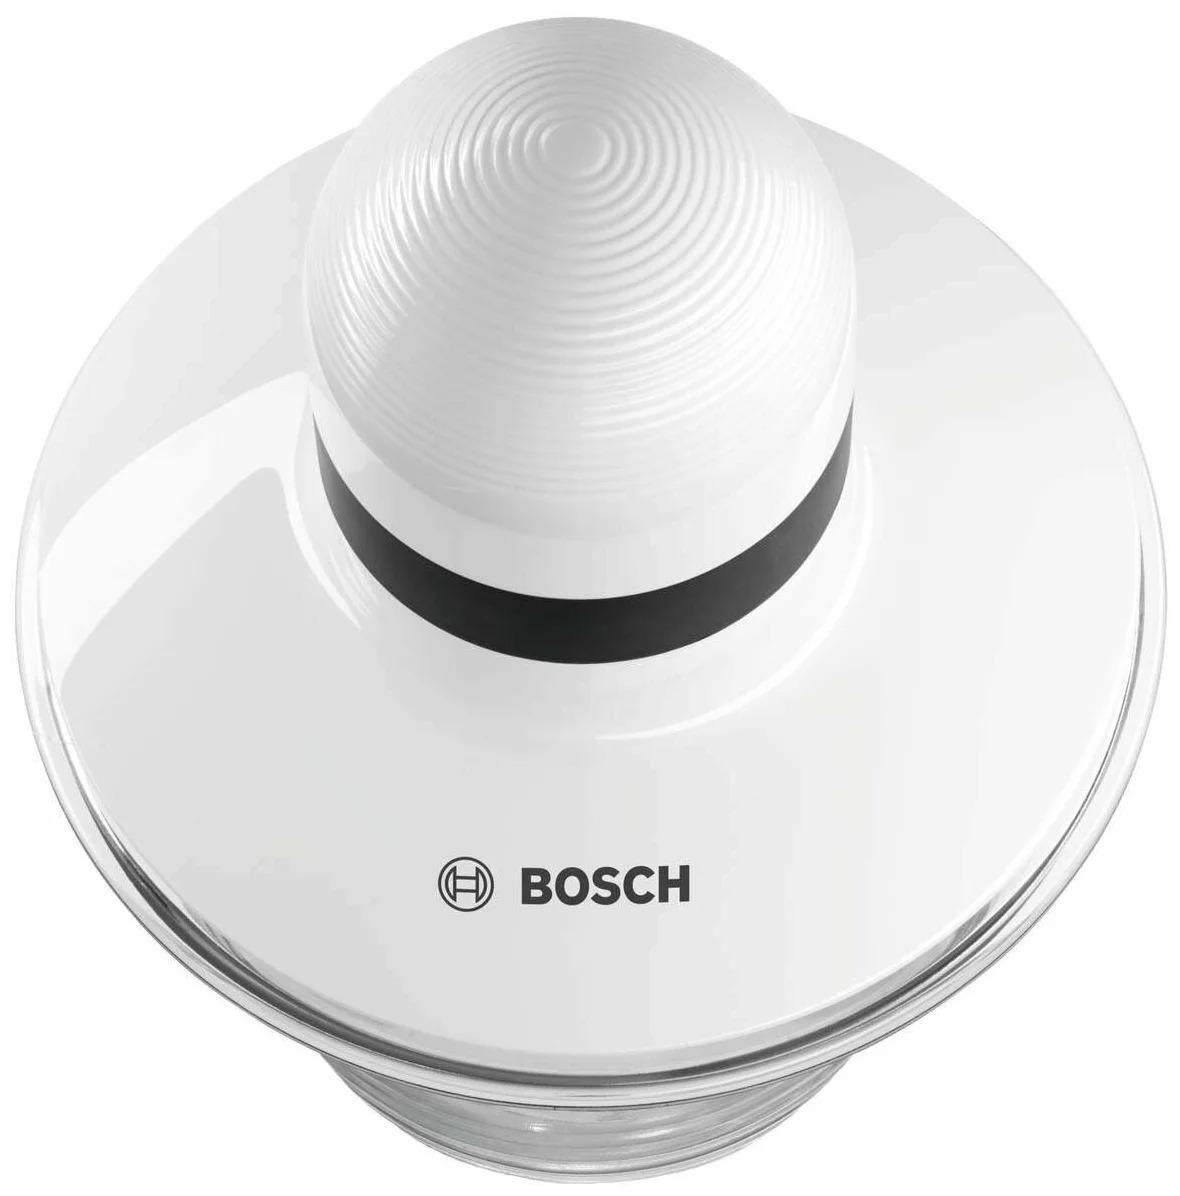 Измельчитель электрический Bosch MMR08A1 0.8л. 400Вт, белый/черный